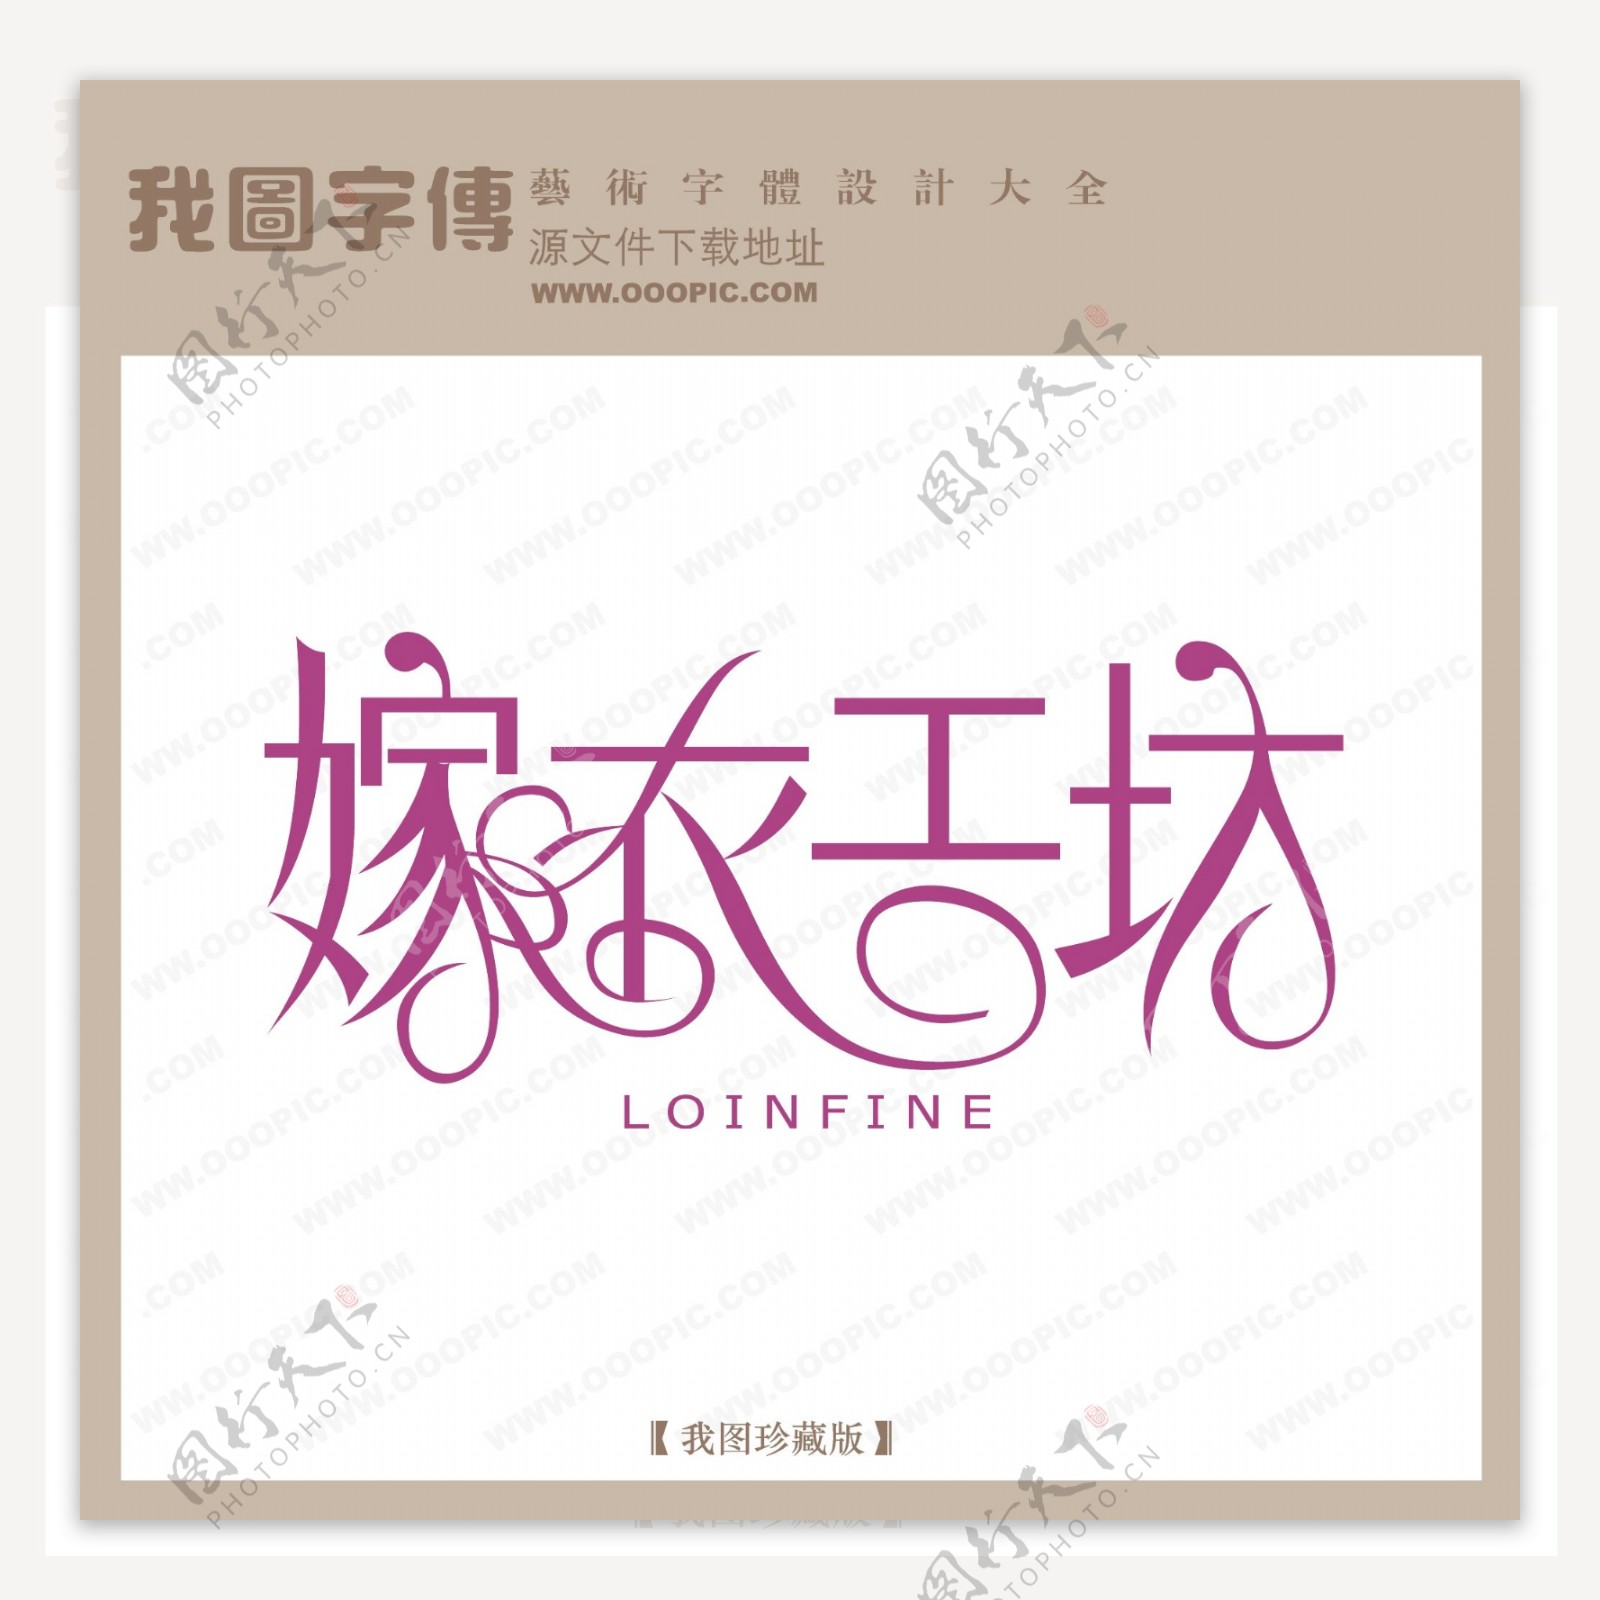 嫁衣工坊字体设计艺术字设计中文现代艺术字